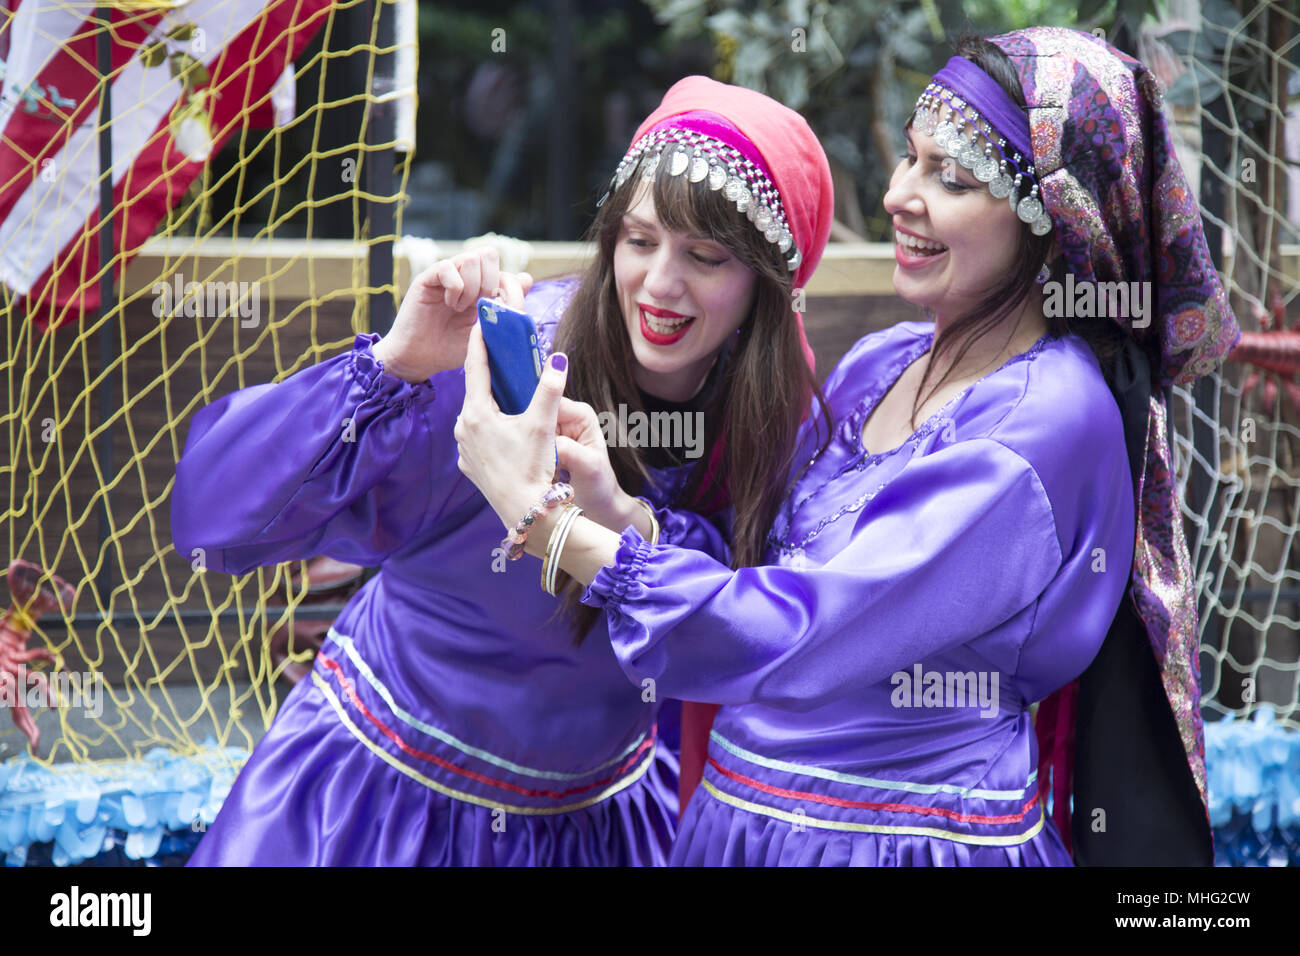 Die jährliche persische Parade in New York City feiert den Iran reiche kulturelle Geschichte und fördert uns Iranischen Freundschaft unter den Völkern. Stockfoto